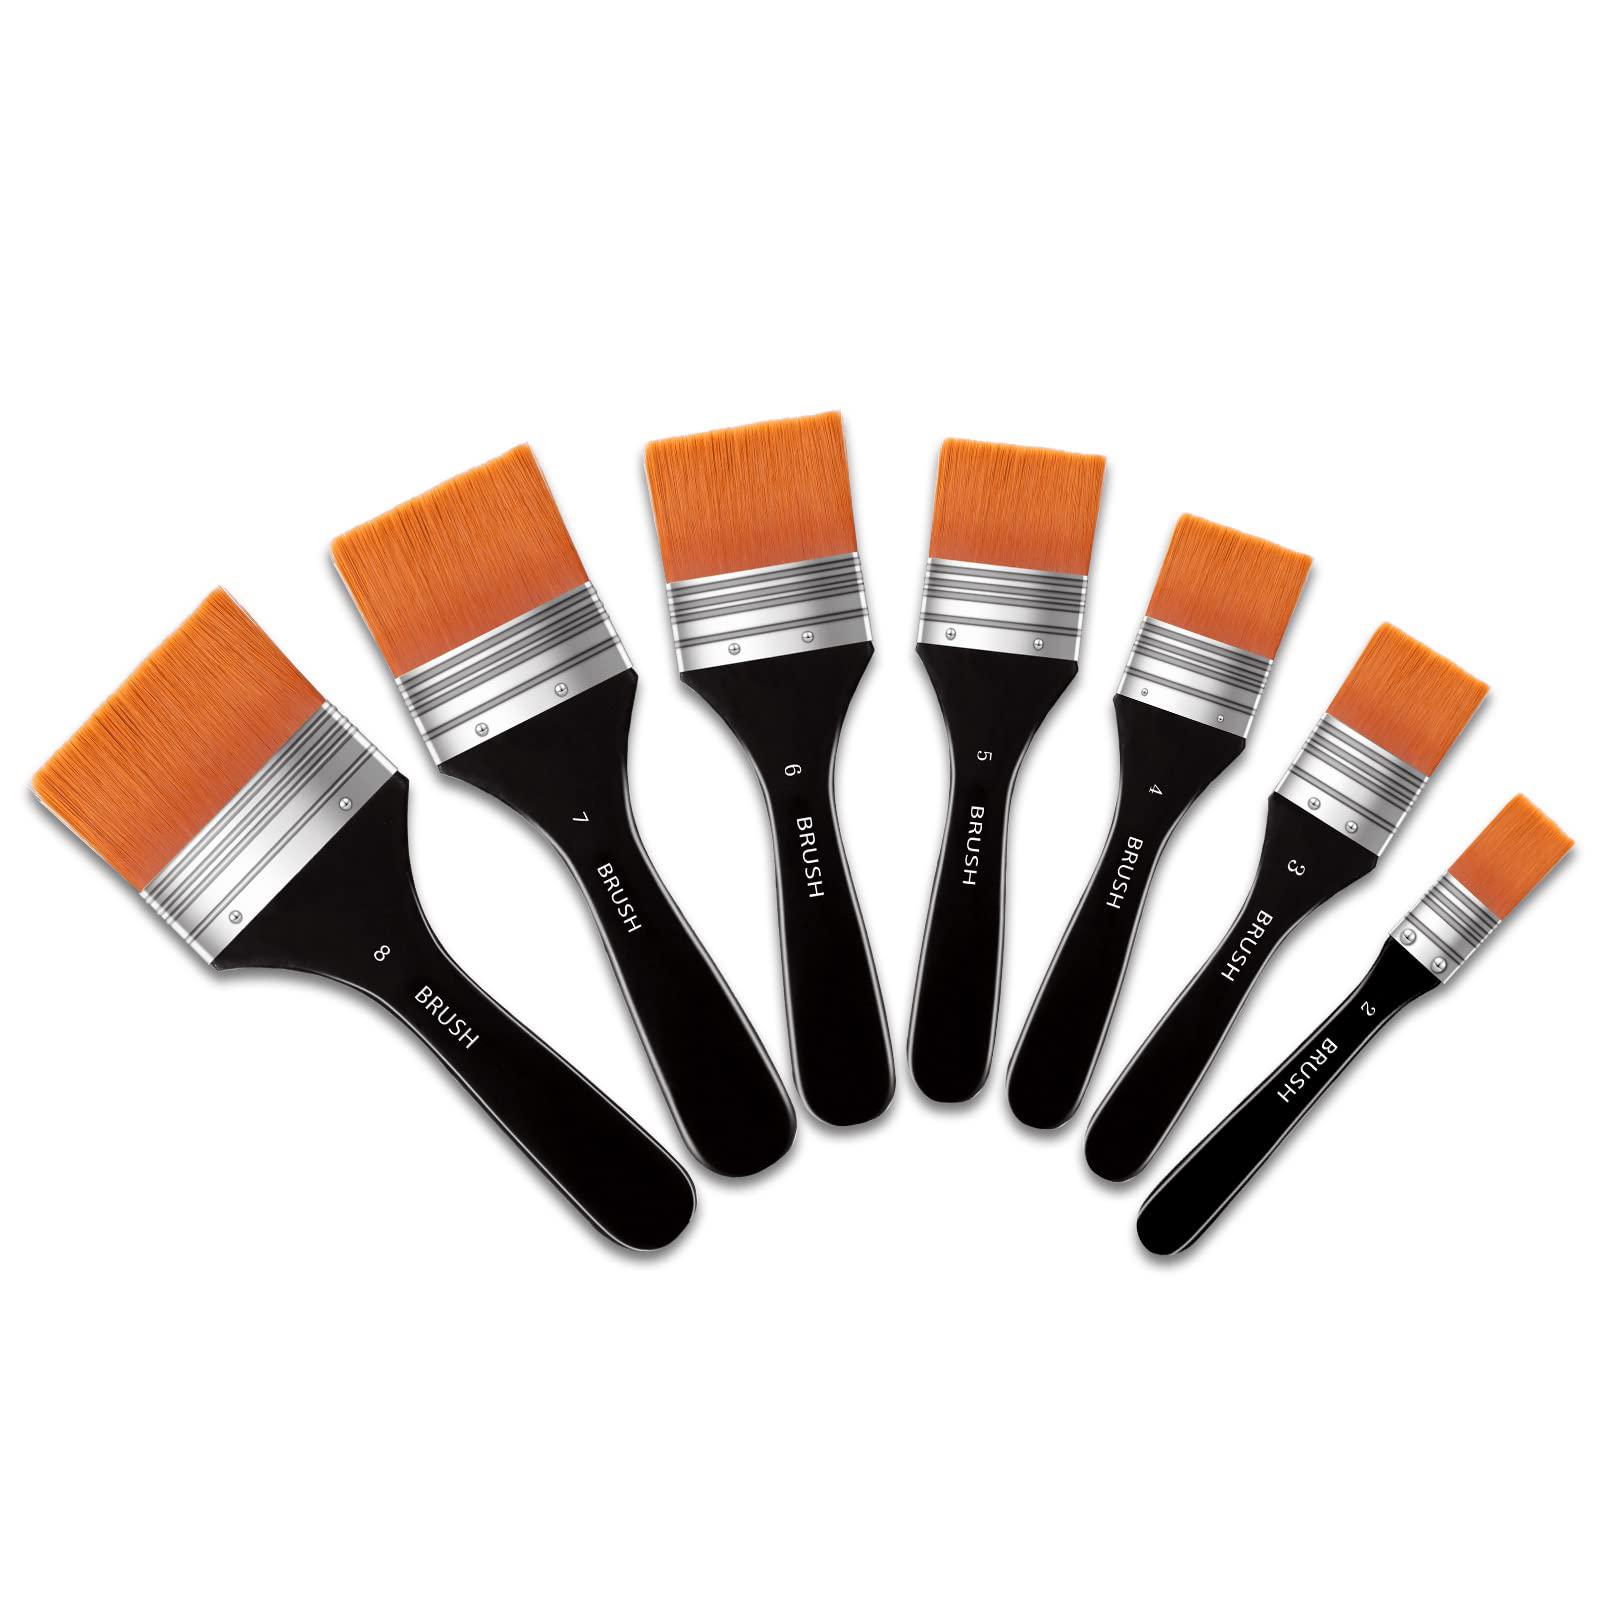 Zubebe set of 7 flat paint brushes for acrylic painting, soft painting  brushes assorted sized craft brushes nylon chip brushes artis